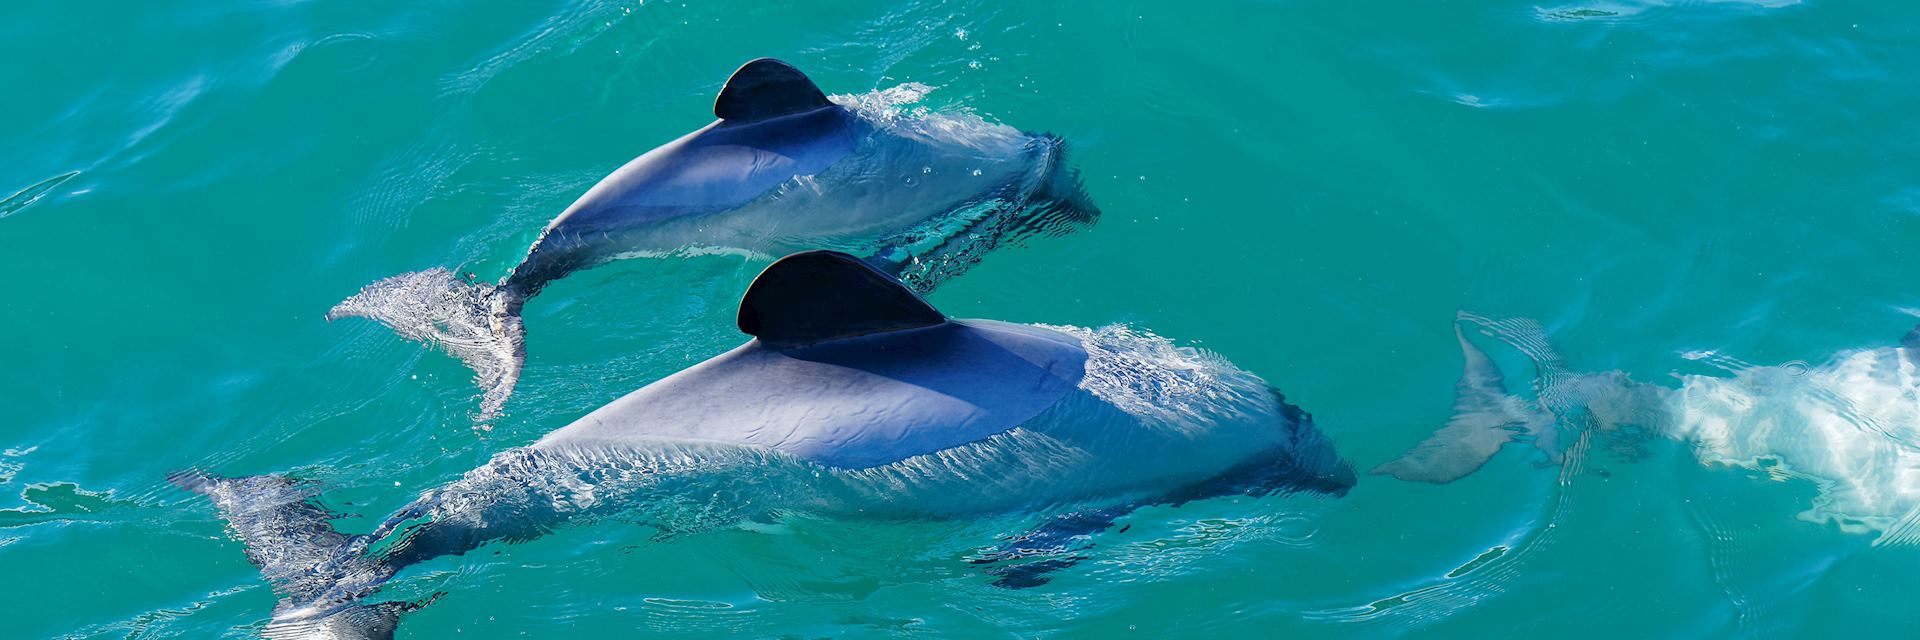 Hector's dolphins, Akaroa